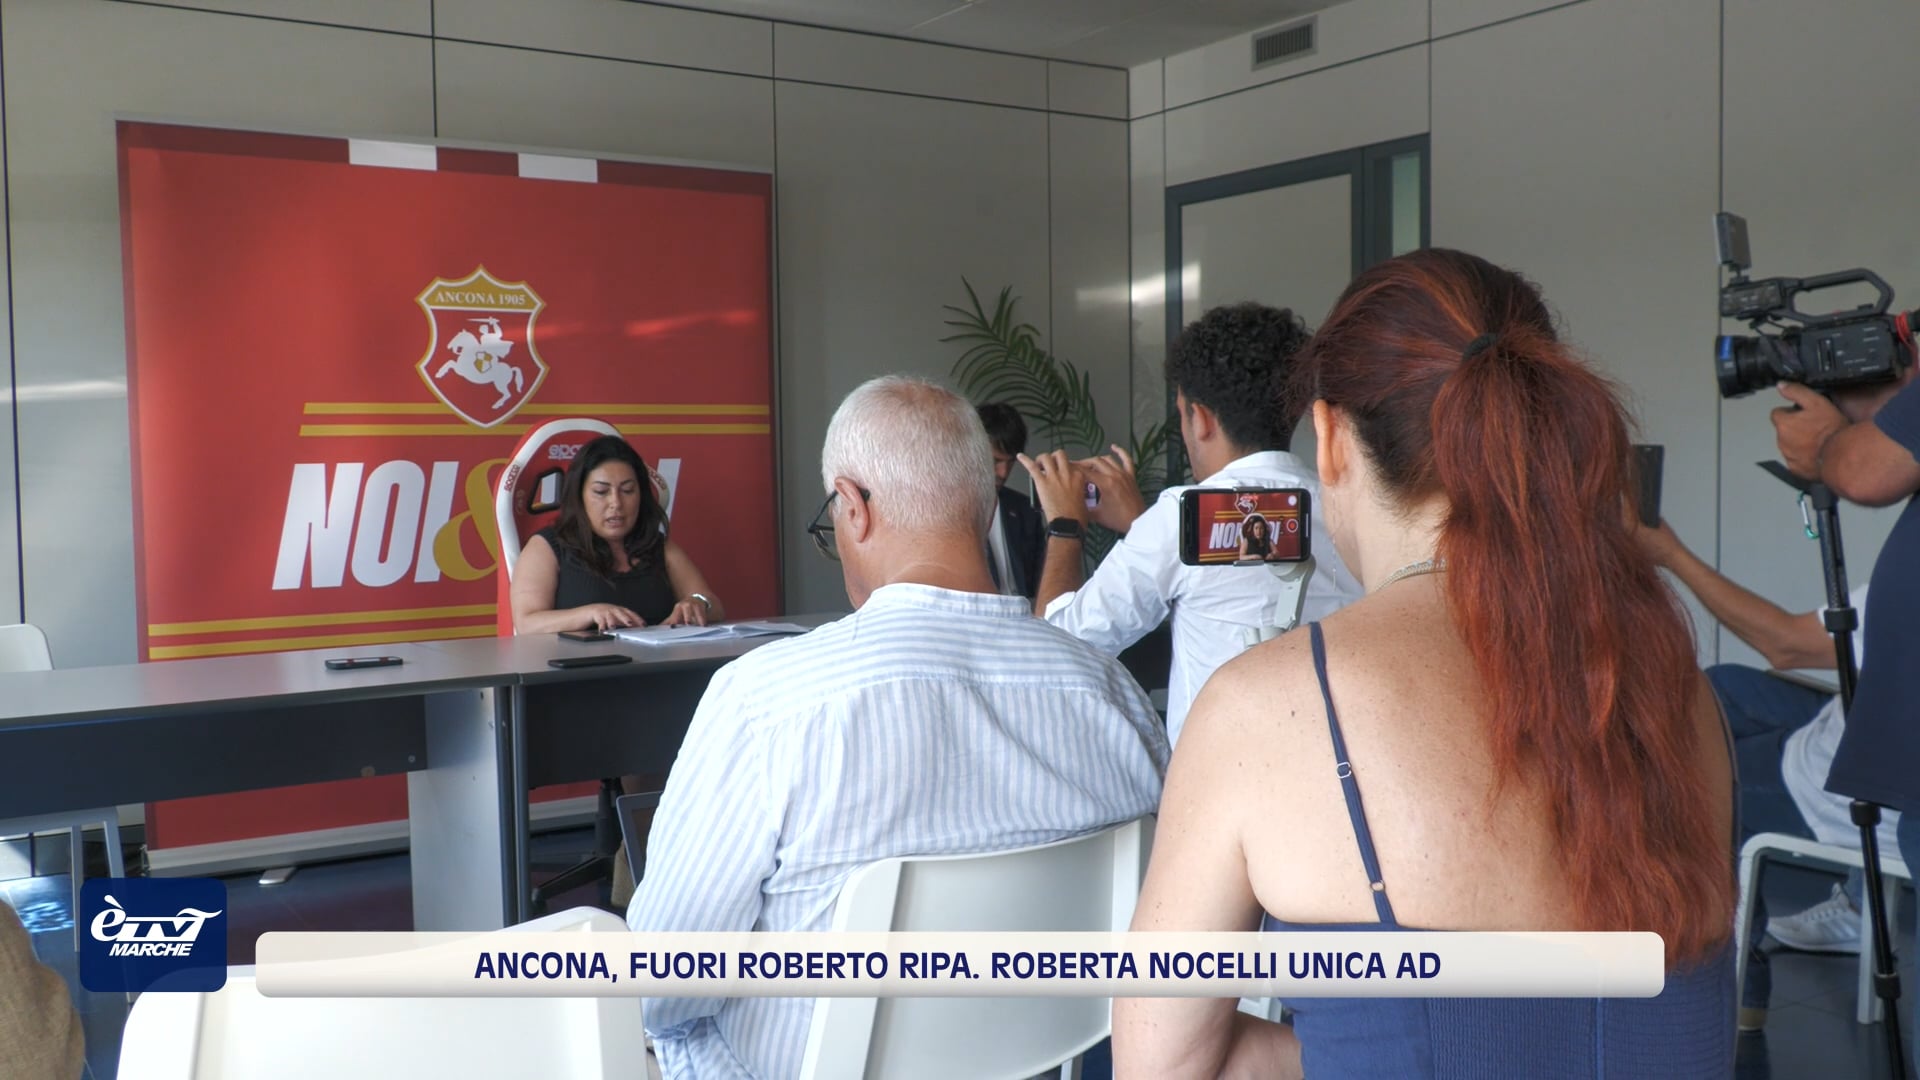 Ancona, fuori Roberto Ripa. Roberta Nocelli unica ad  - VIDEO